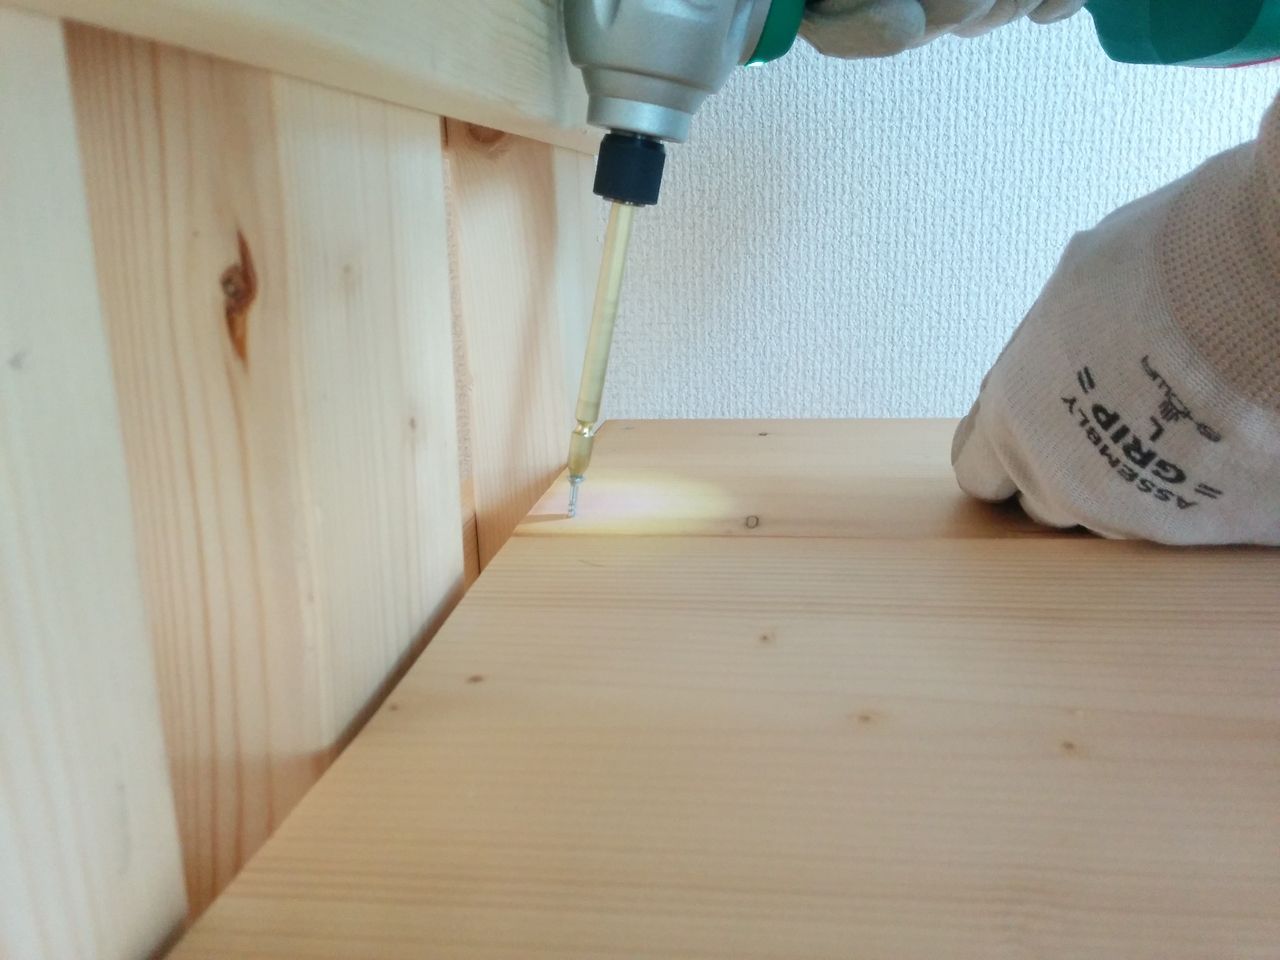 棚板材となる1×8材をカットして、インパクトドライバーを使って木ビスで棚板材を固定していきます。
あとはこの繰り返しの作業です。